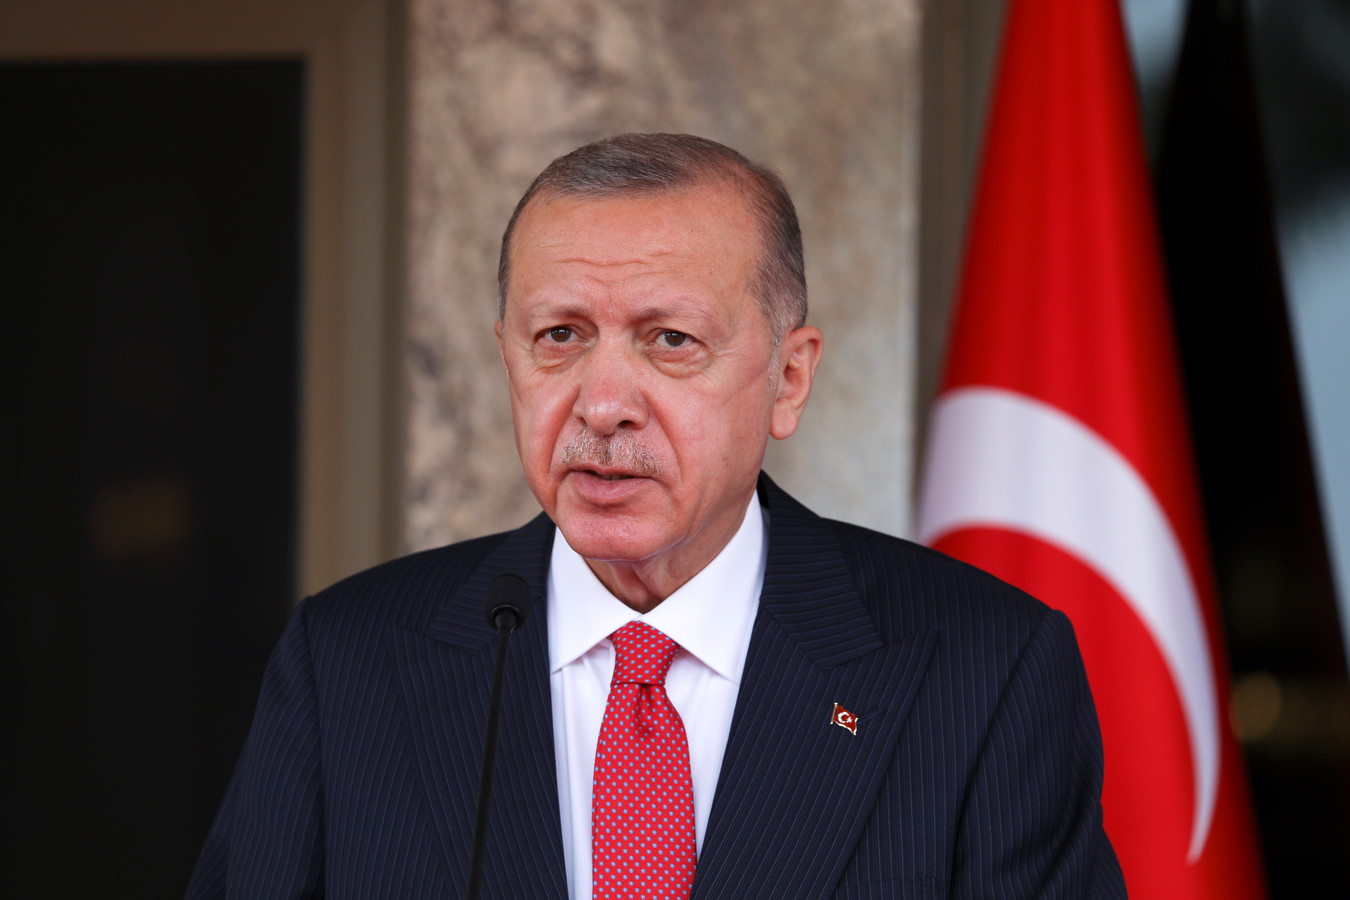 De Turkse president Recep Tayyip Erdogan